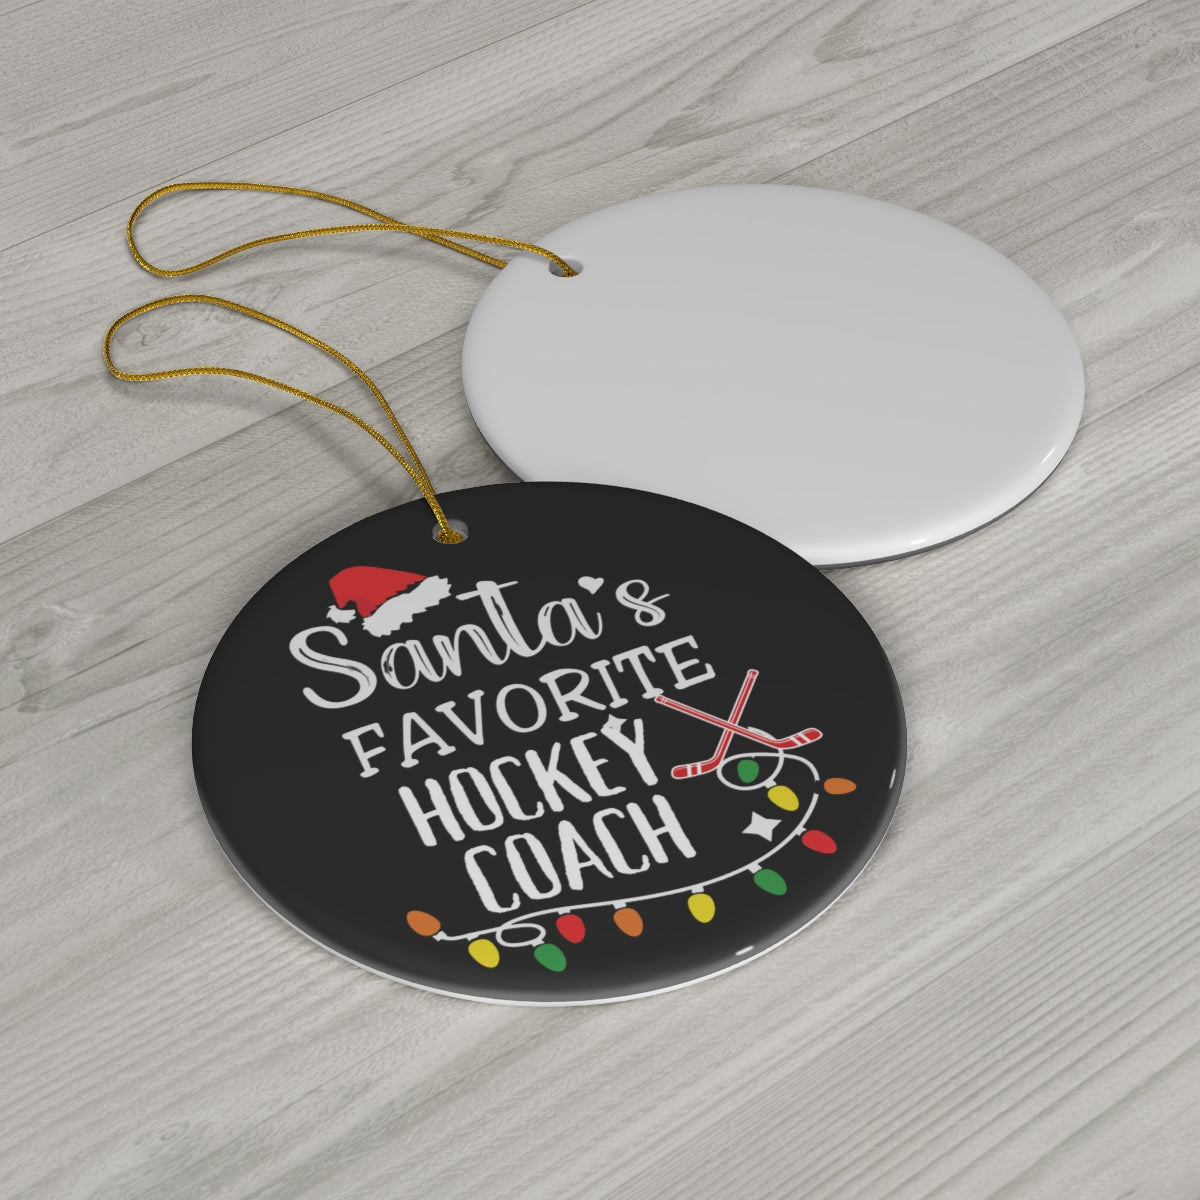 Ice Hockey Coach Ornament - Santa's Favourite